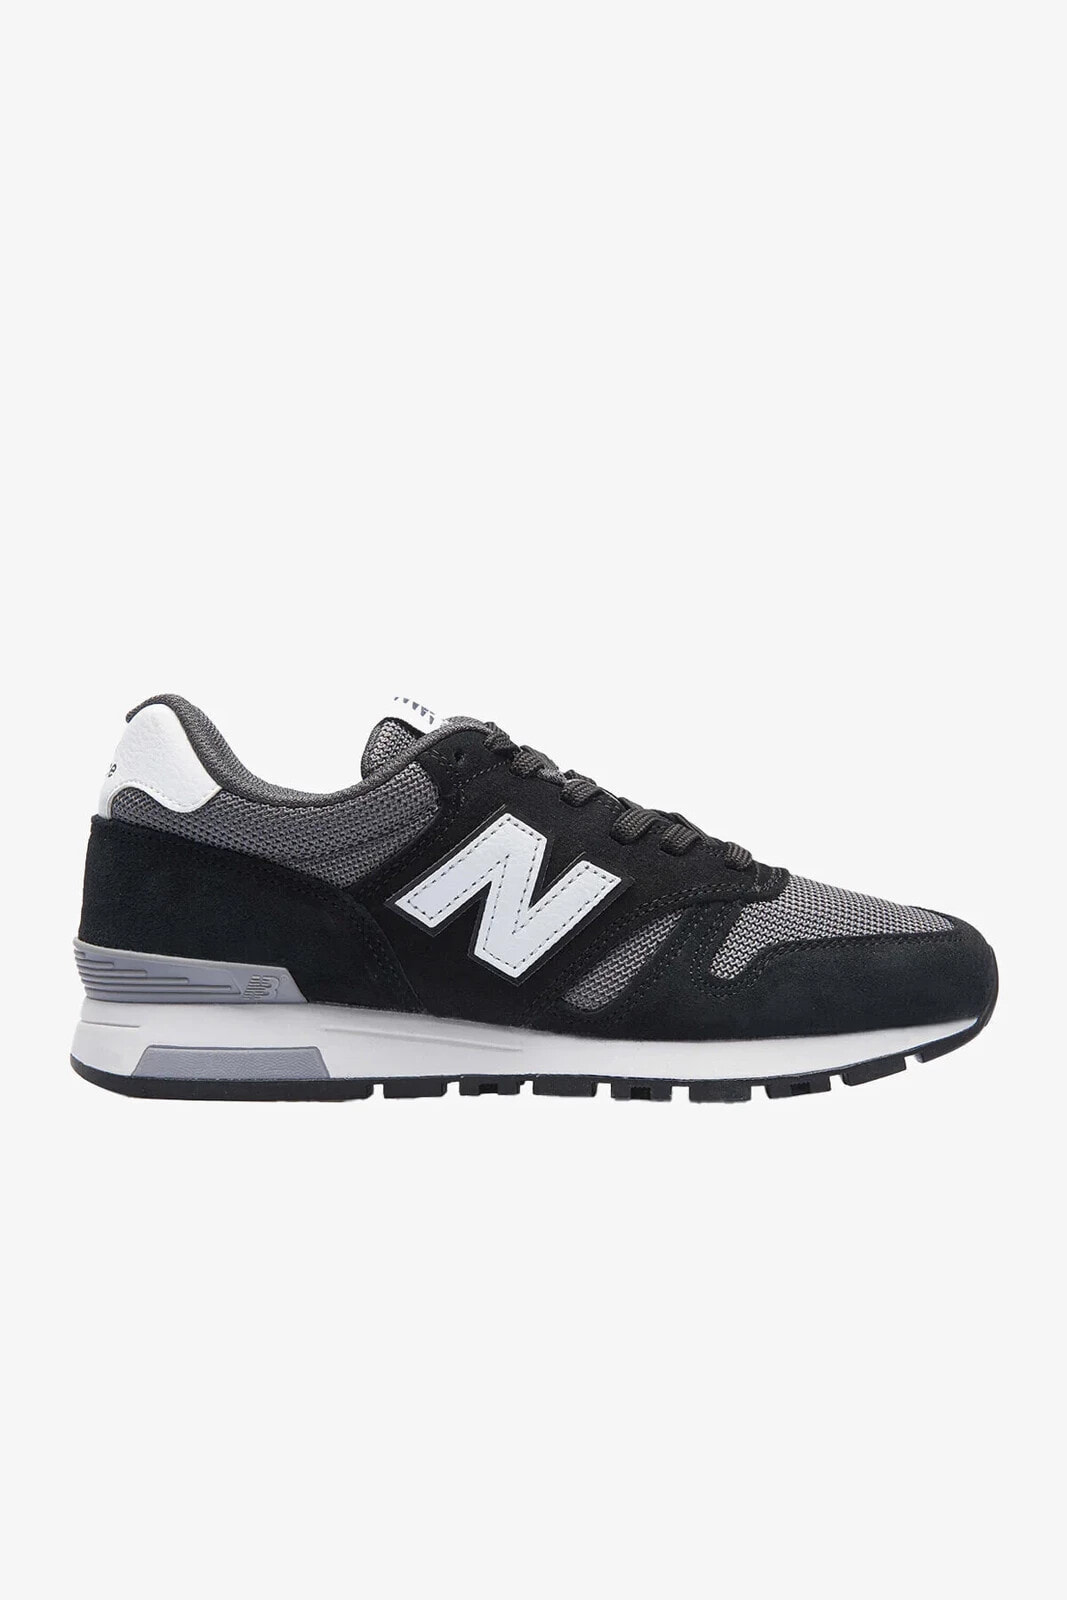 NB 565 Lifestyle Erkek Siyah Beyaz Sneaker Spor Ayakkabı